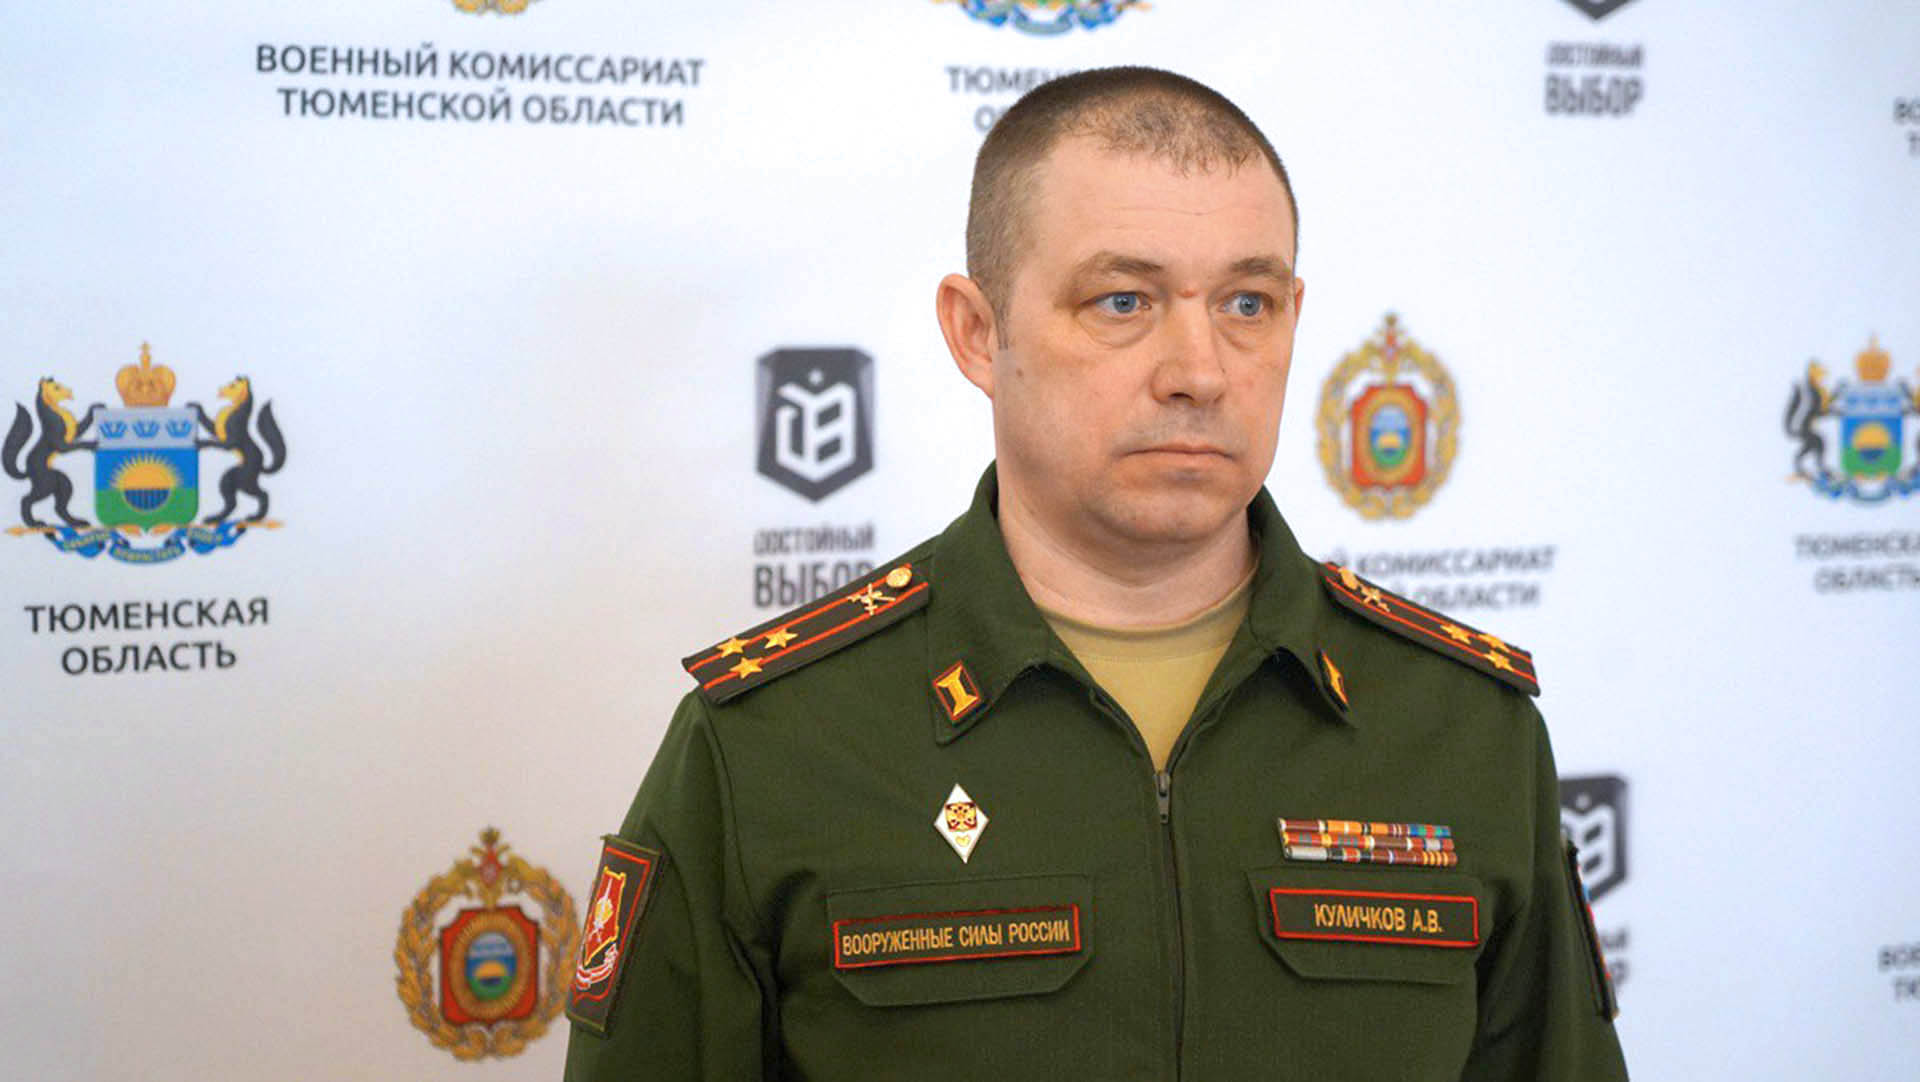 Сайт военкомата тюмени. Военный комиссар Тюмень Куличков.